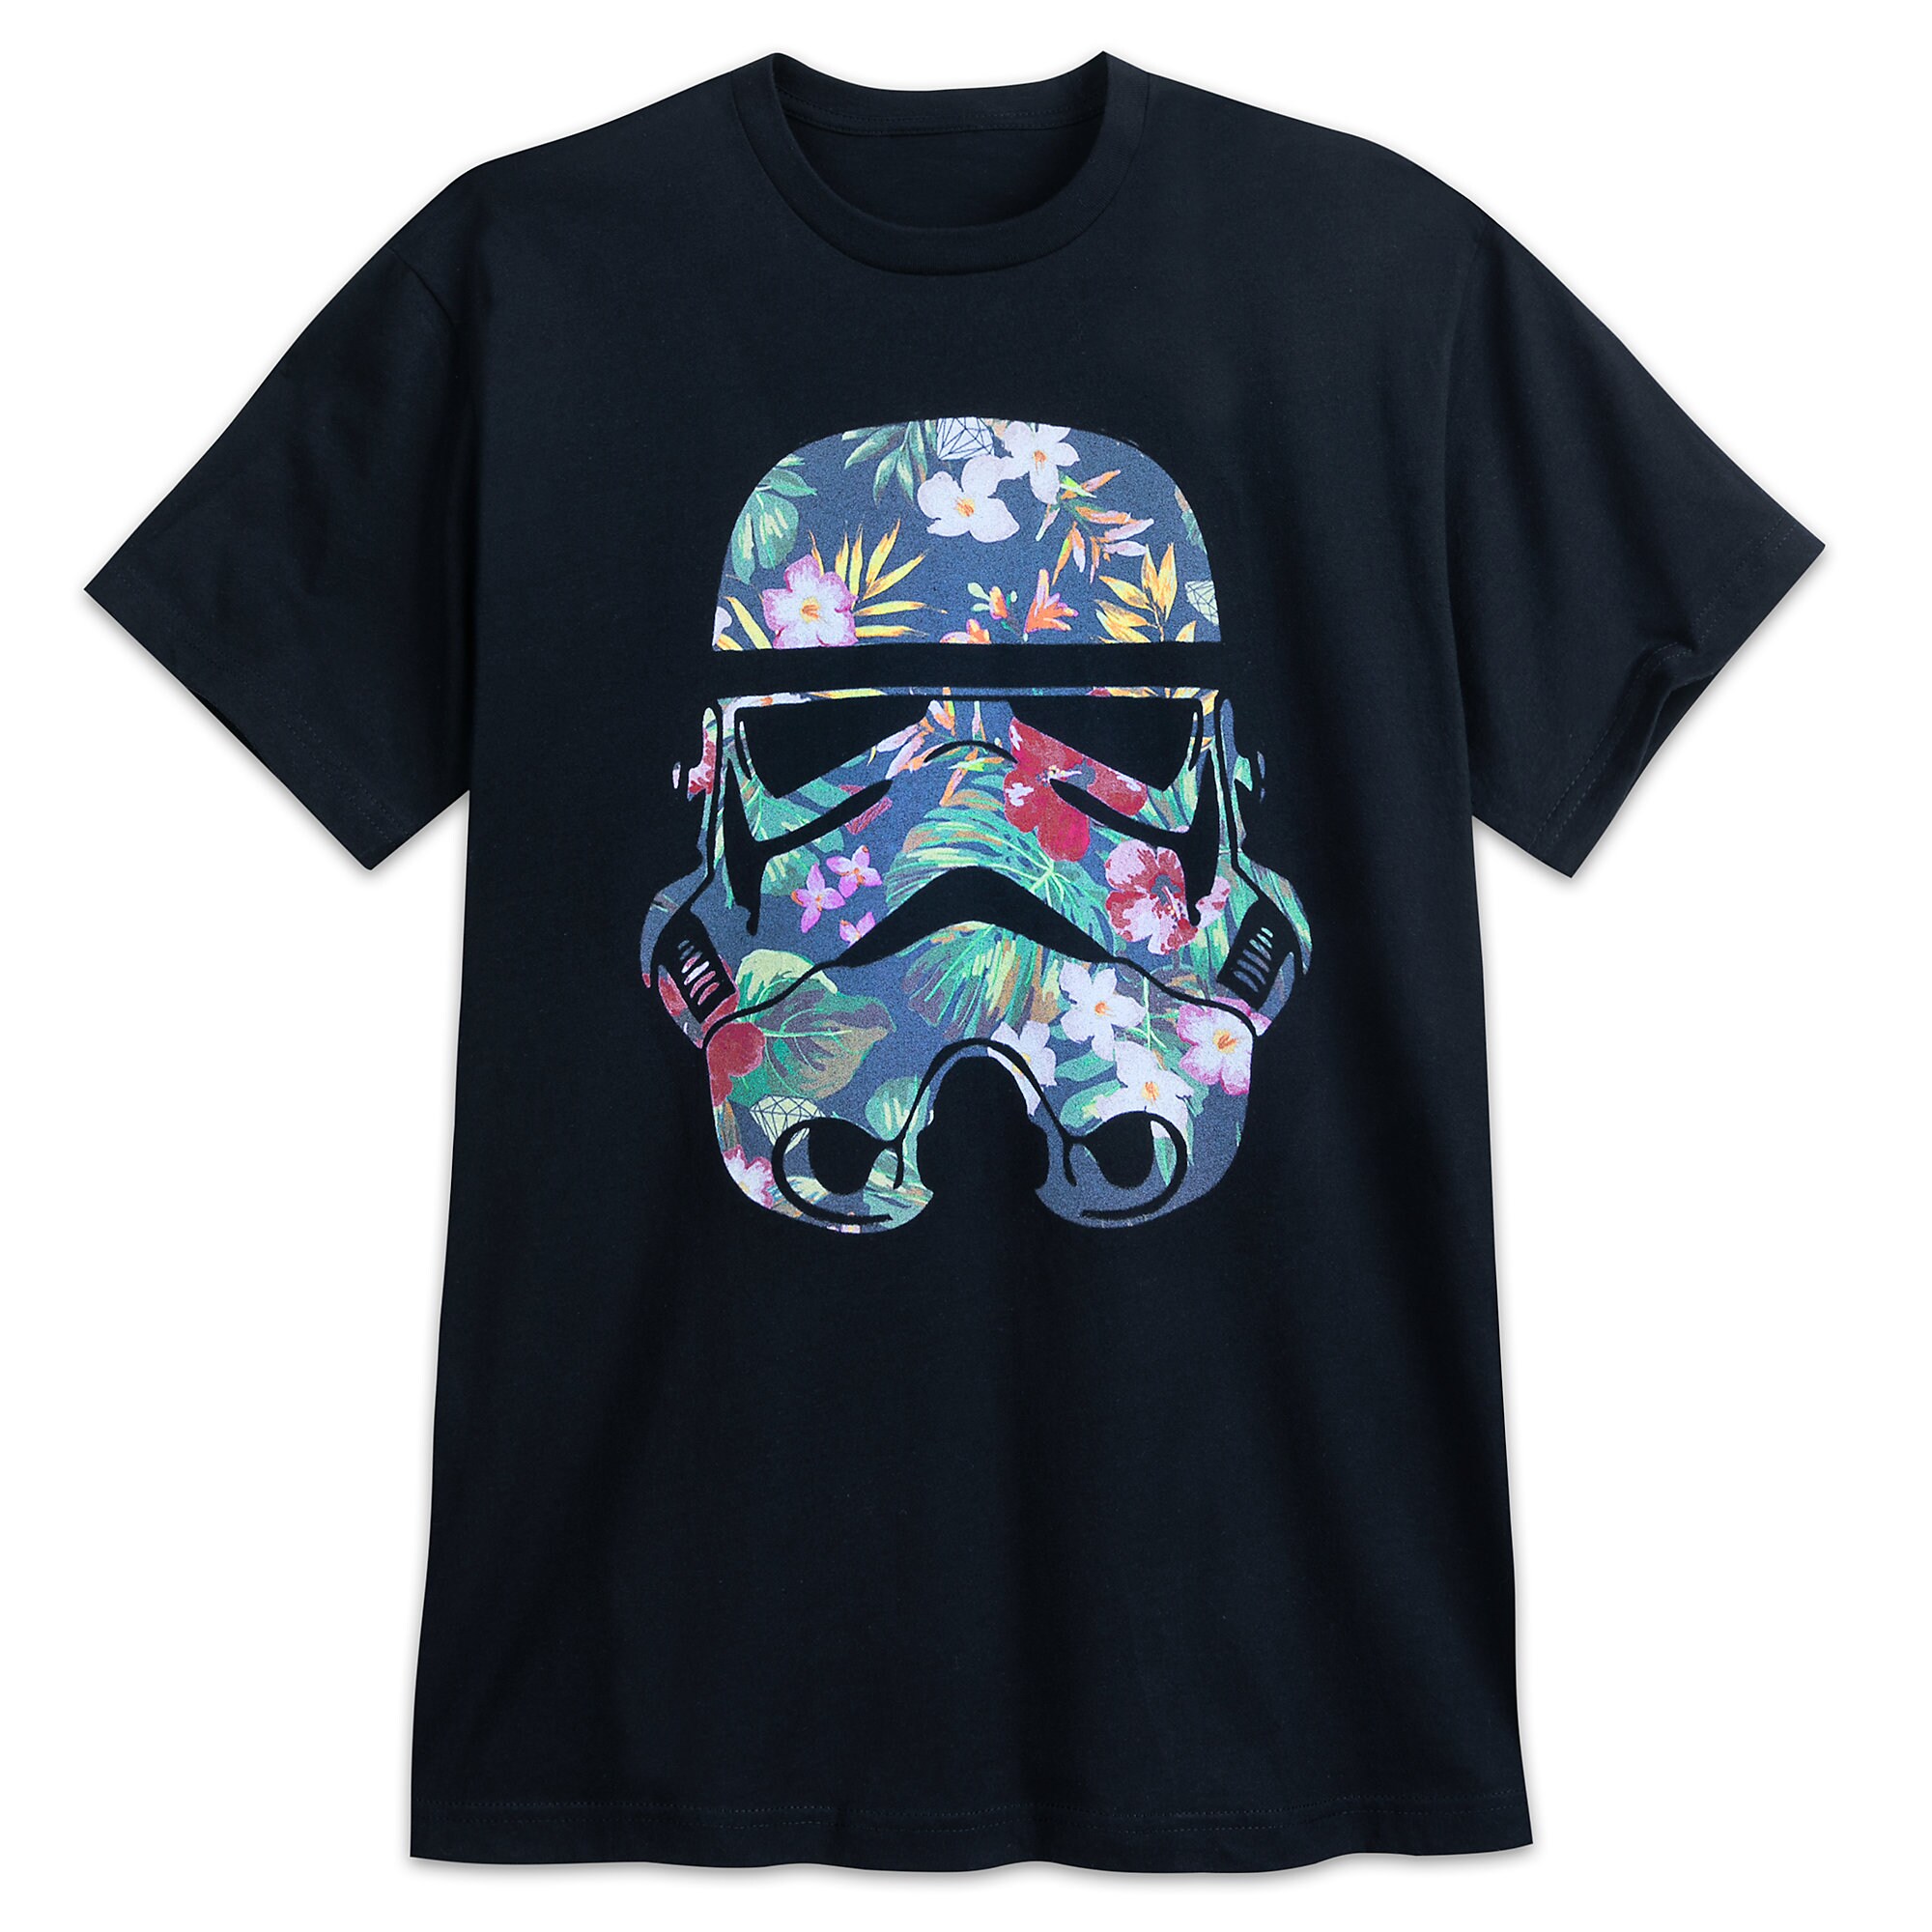 Stormtrooper Floral T-Shirt for Men - Star Wars